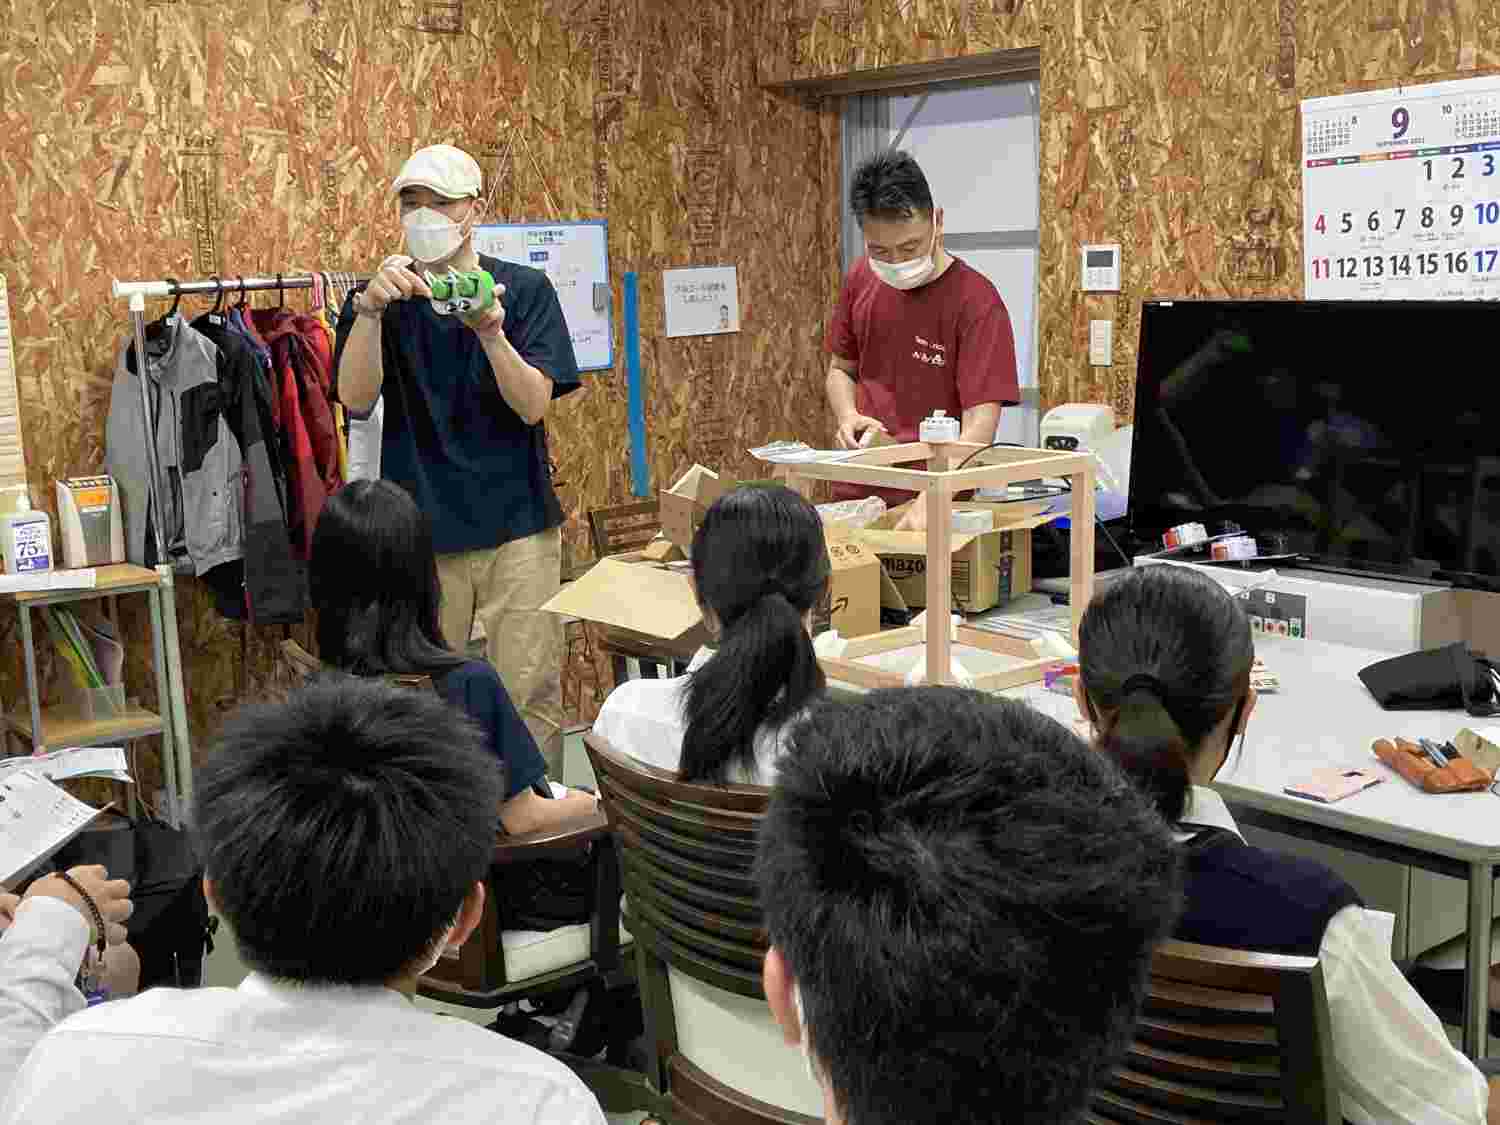 施設見学後、城北埼玉高等学校と新渡戸文化高等学校の生徒が展示に向けて実験する栽培システムと、それに使用する器具のデモンストレーションを行いました。